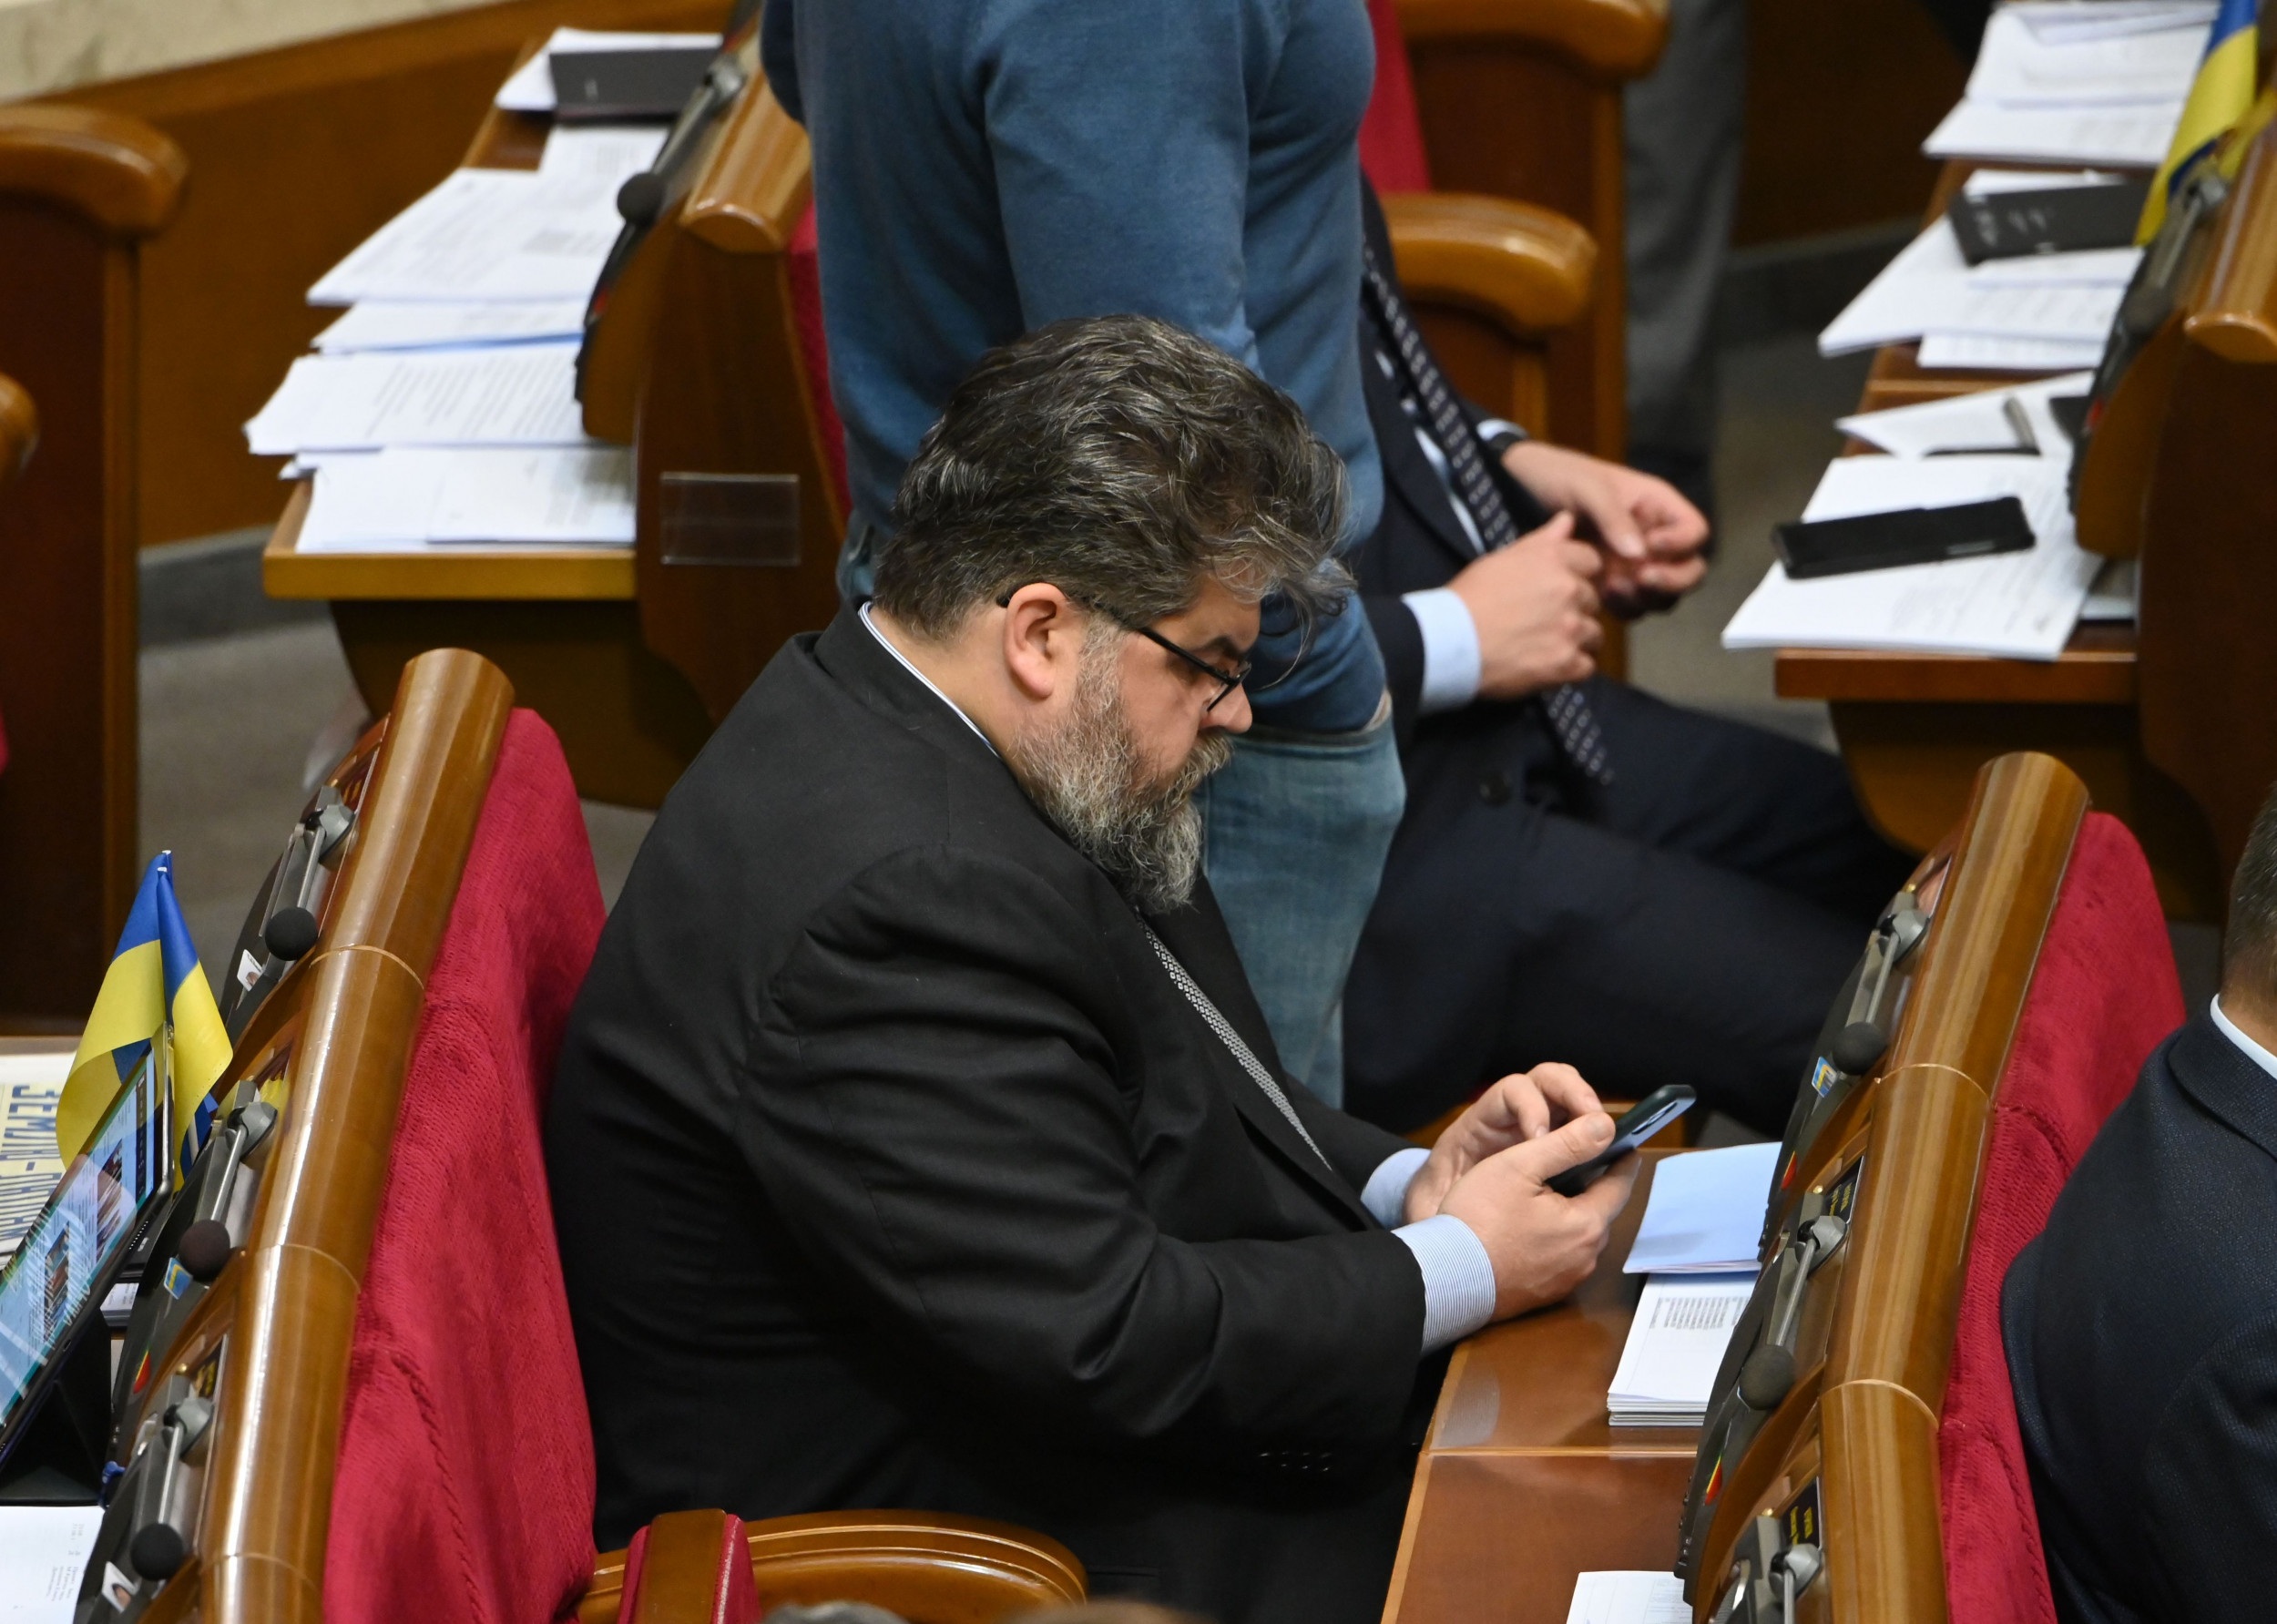 Nghị sĩ Ukraine xin lỗi vì nhắn tin cho gái gọi khi đang họp quốc hội